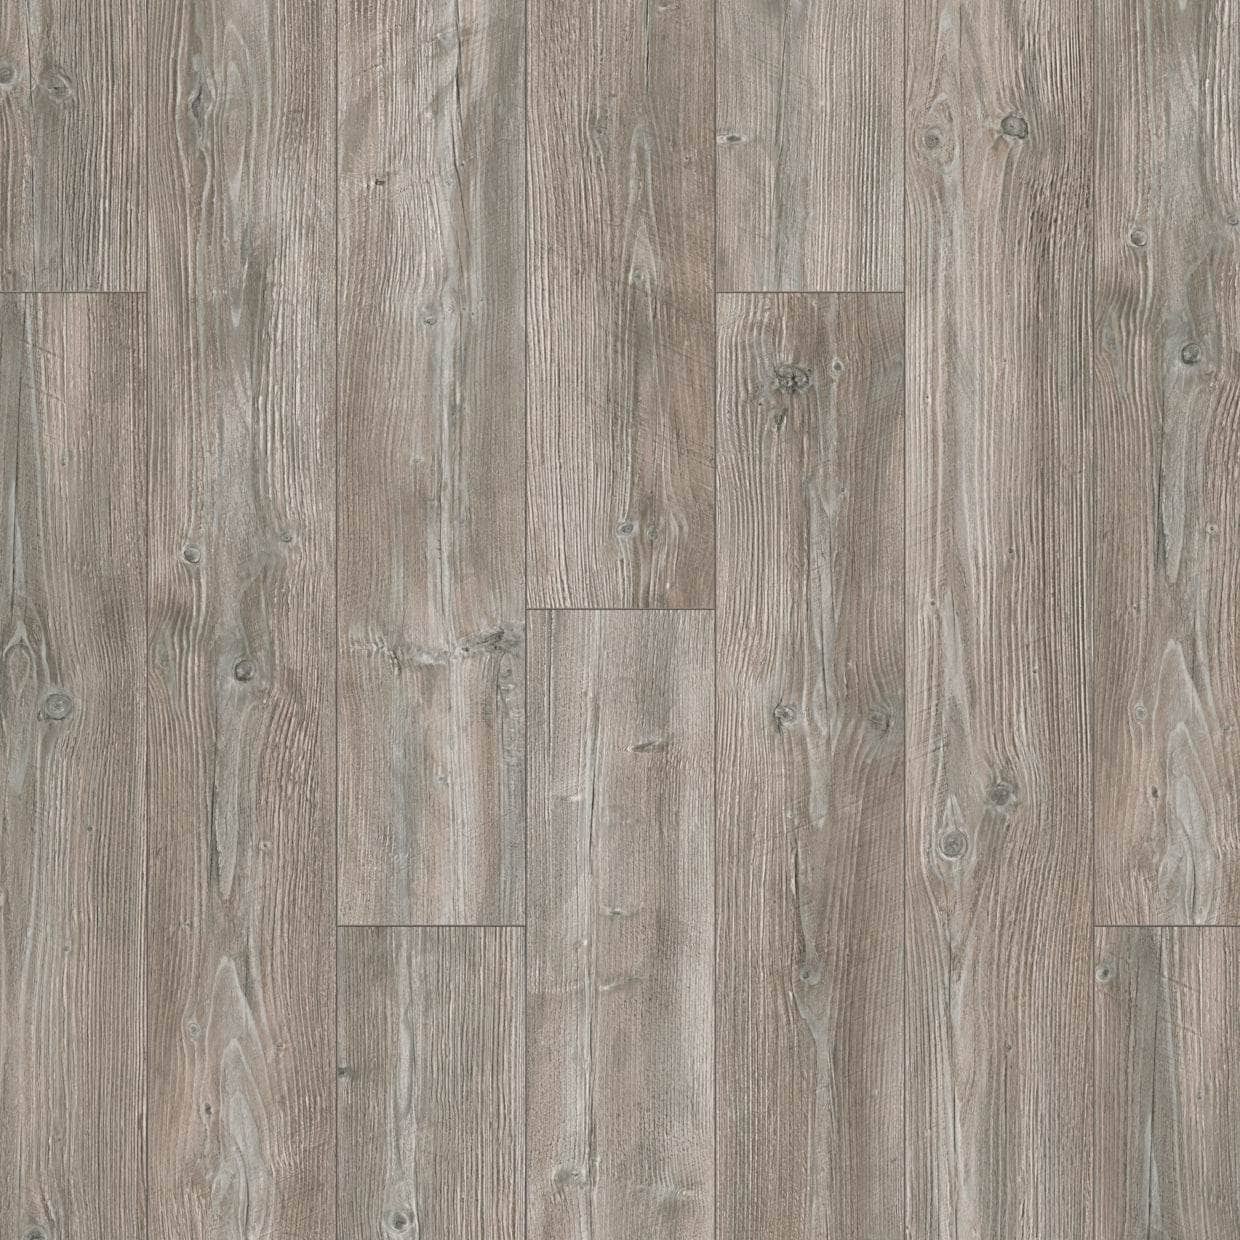 Flooring & Carpet  -  Krono Vario Plus Ponderosa Pine 12mm Laminate Flooring (1.48m² Pack)  -  60003744